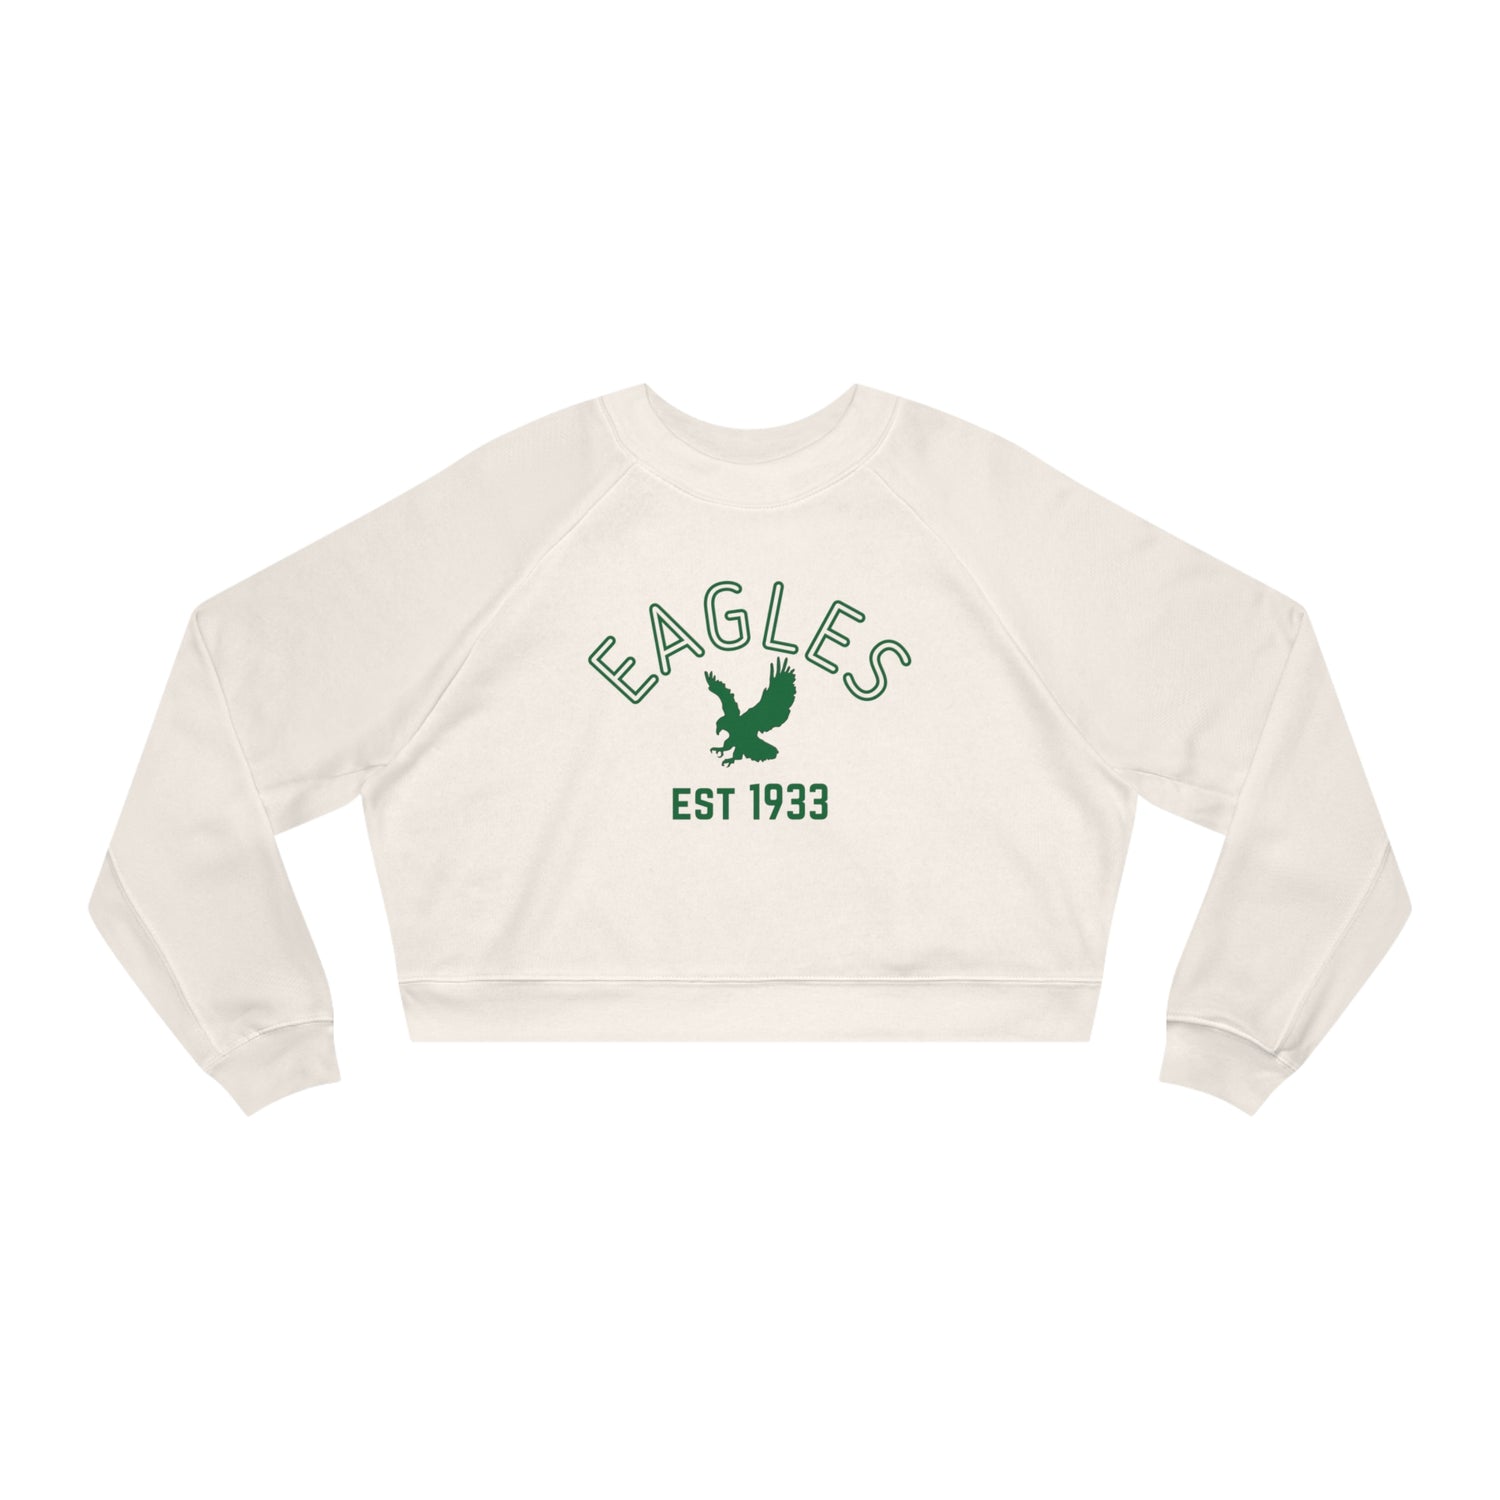 Vintage Eagles Cropped Sweatshirt, Kelly Green Eagles Cropped Sweatshirt, Eagles Cropped Sweatshirt, Philadelphia Eagles Sweatshirt - Home Field Fan